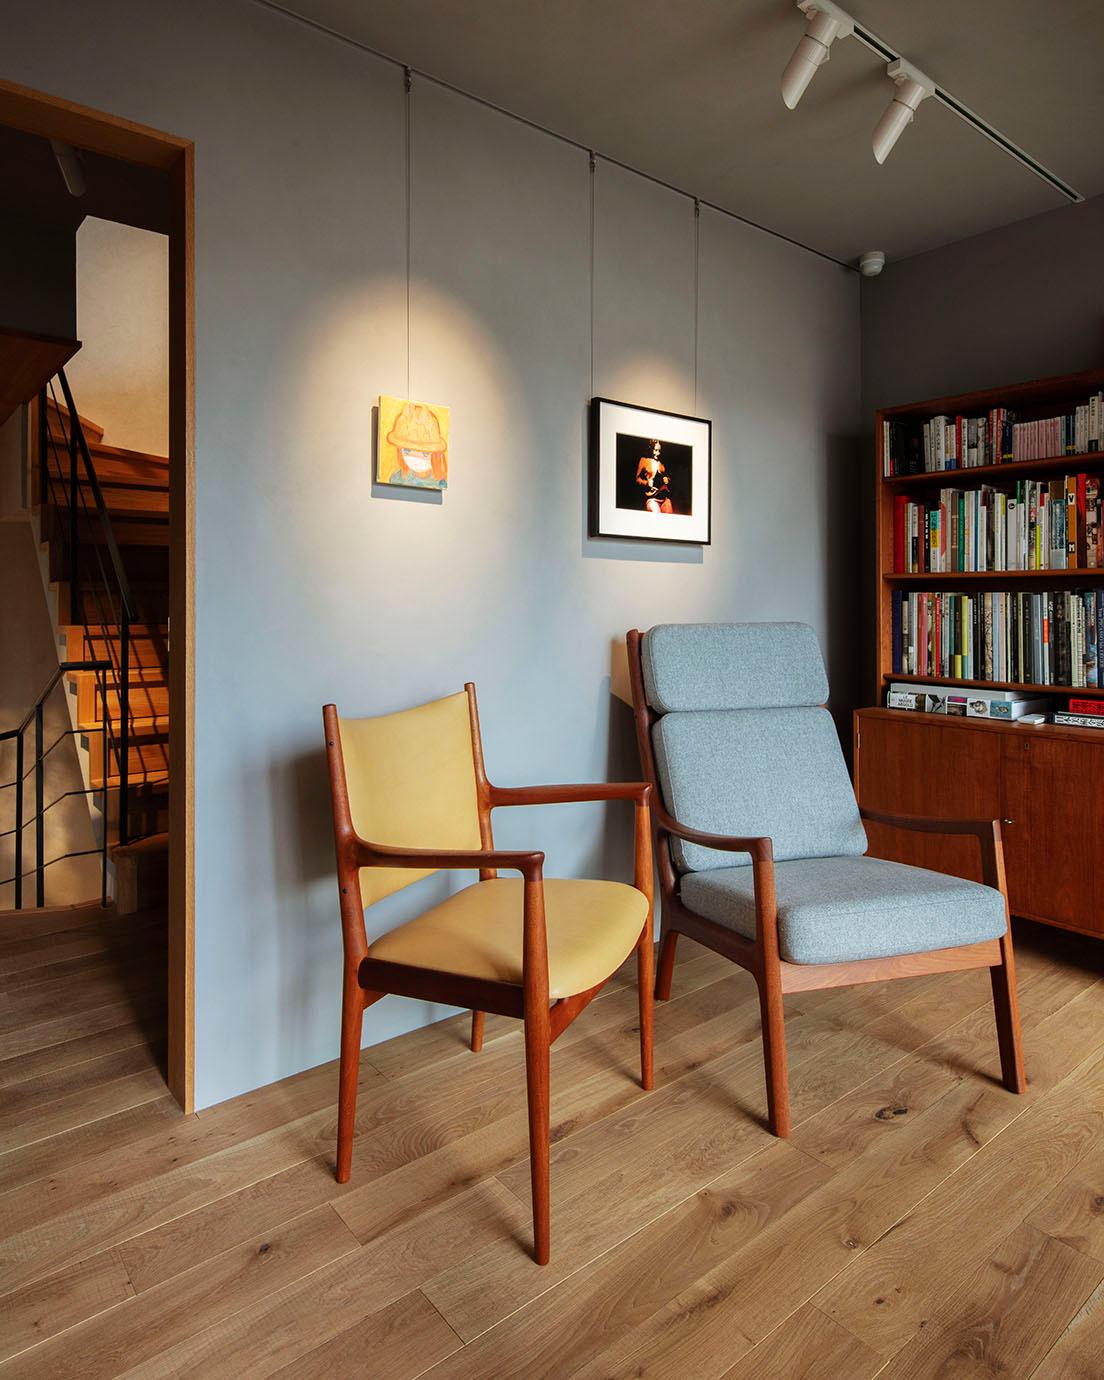 2階の展示室はテラスに面した書斎風のスペース。壁には工藤麻紀子と志賀理江子の作品。 